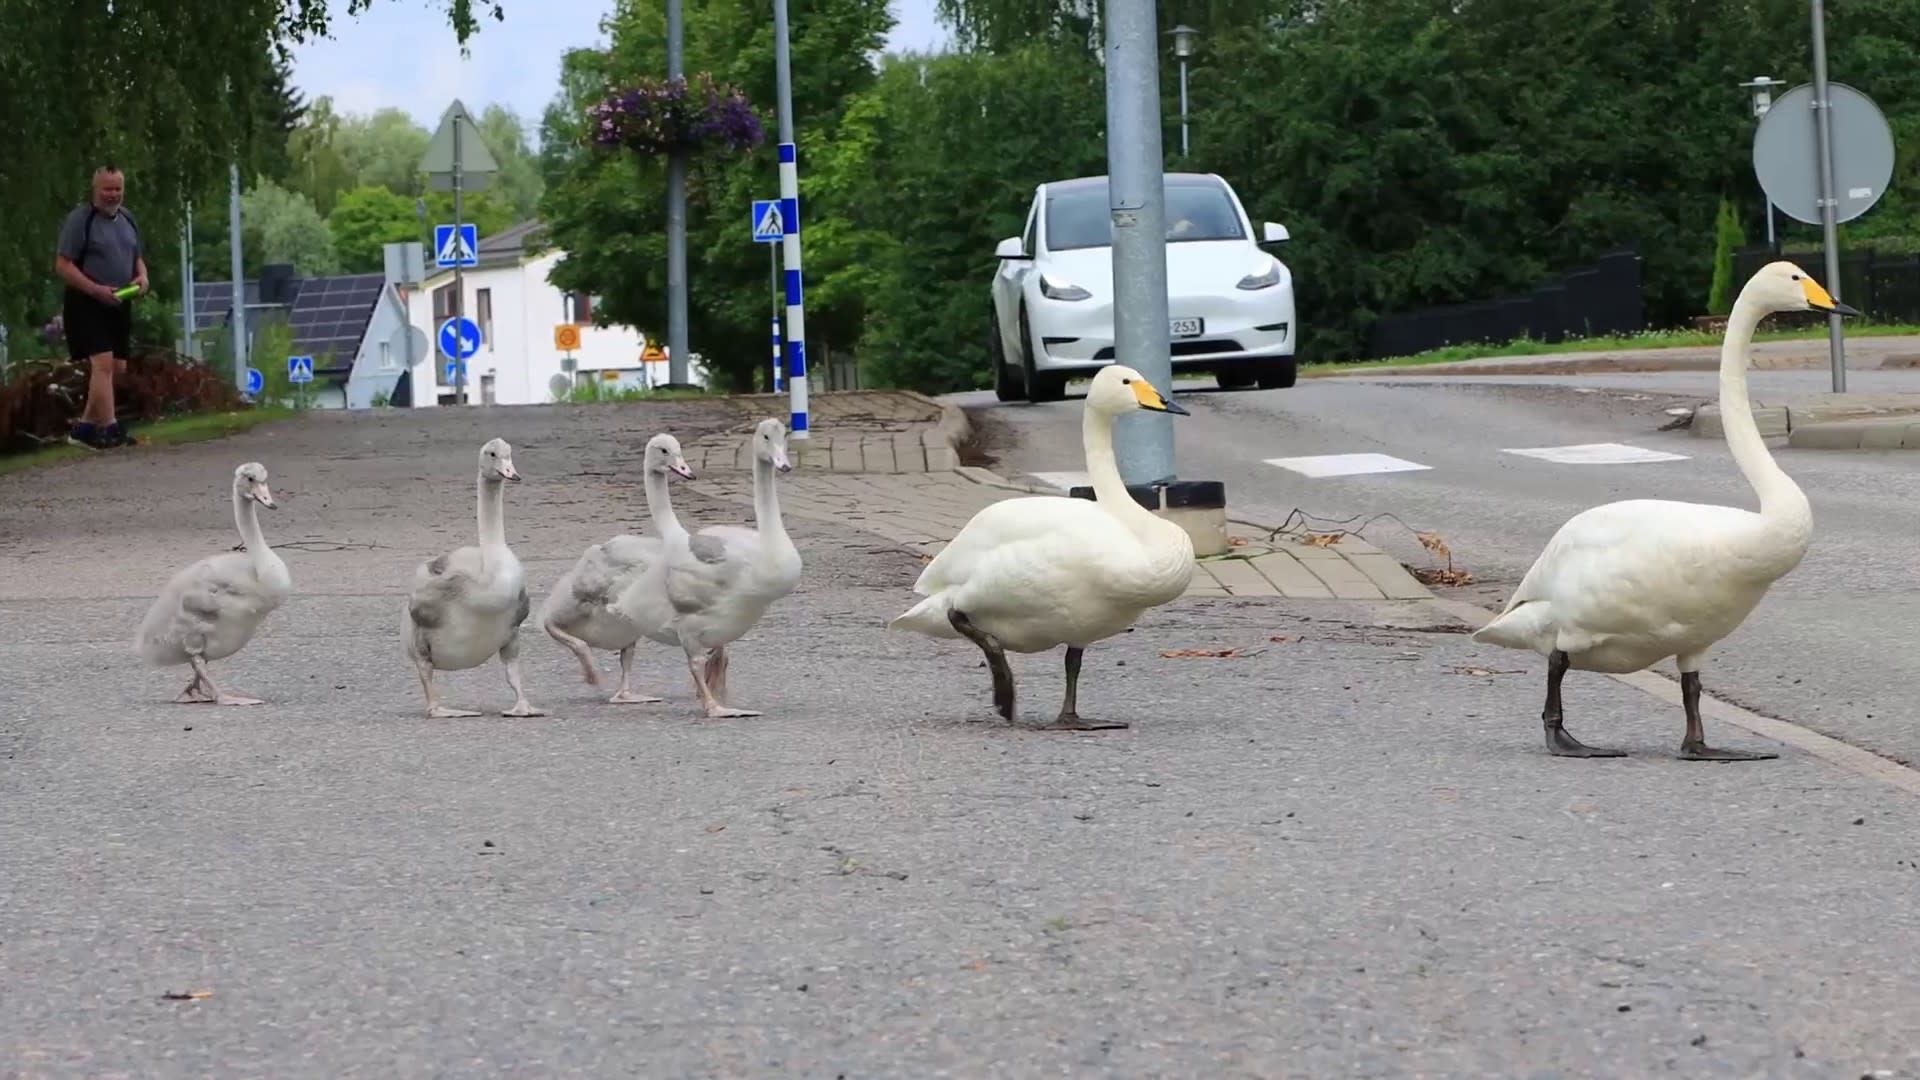 Anschauen: Swan-Familie wird in den sozialen Medien zum Hit, weil sie sich an die Verkehrsregeln hält